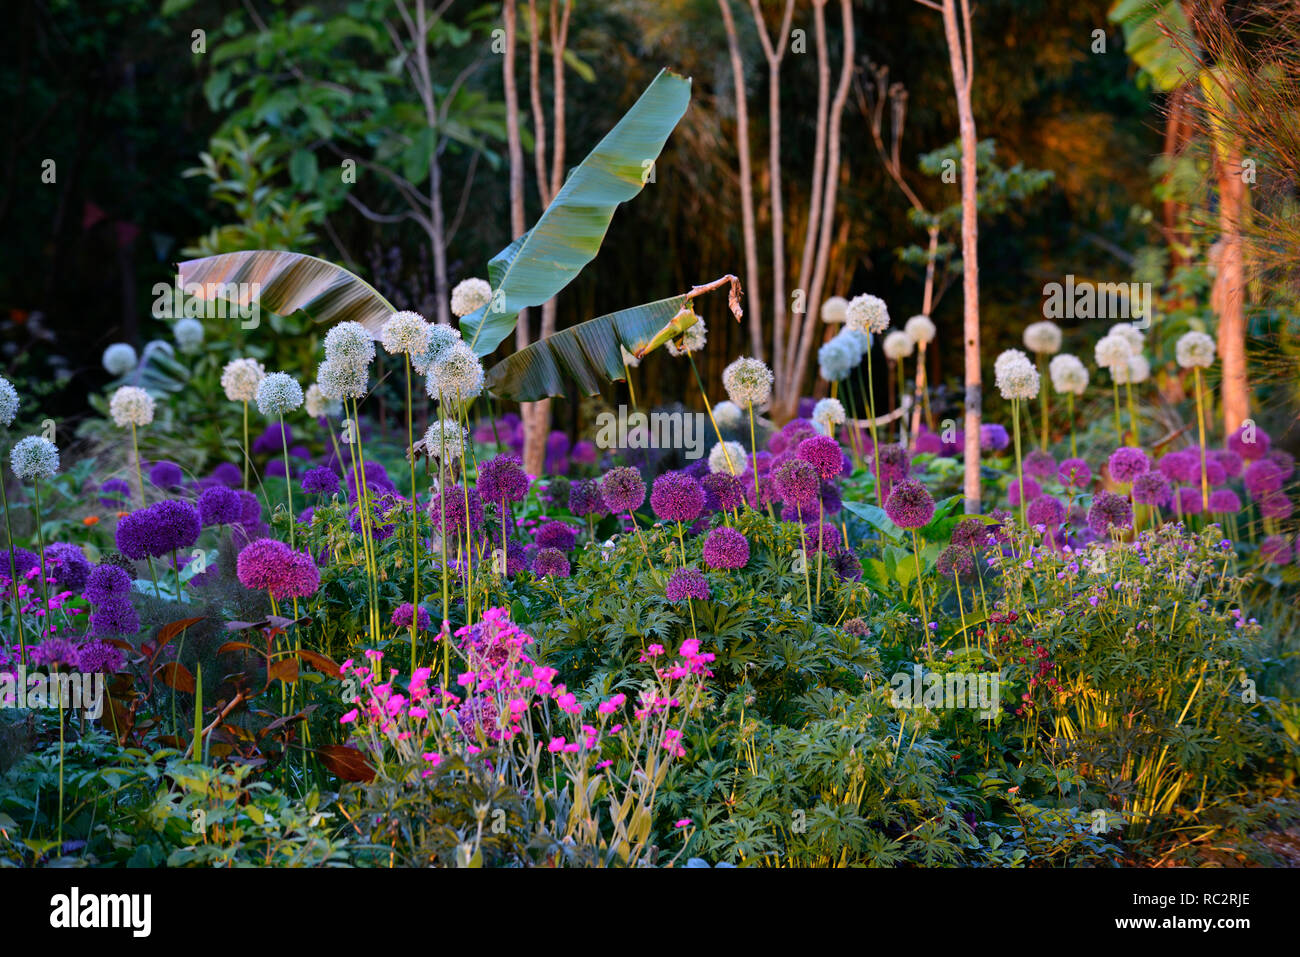 Allium púrpura sensación,Allium Monte Everest,Lychnis coronaria, colinas de tierra blanca, rosa flores púrpura,floración,mezclar,mezclado,combinación,cama,frontera,planta Foto de stock